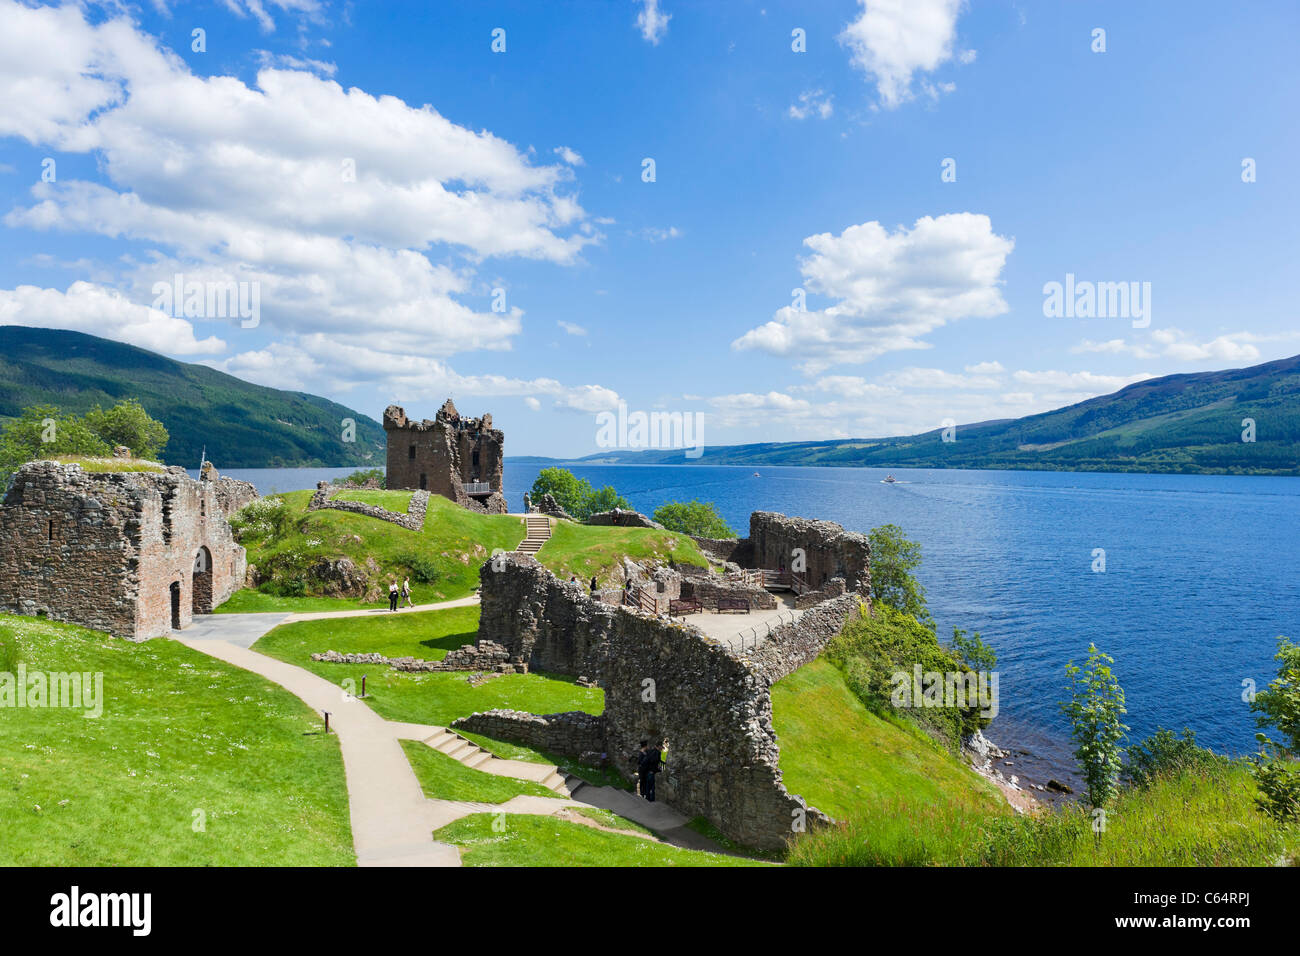 Ruines du château d'Urquhart, sur la rive ouest du Loch Ness (site de nombreuses observations de Nessie), Drumnadrochit, Highland, Scotland Banque D'Images